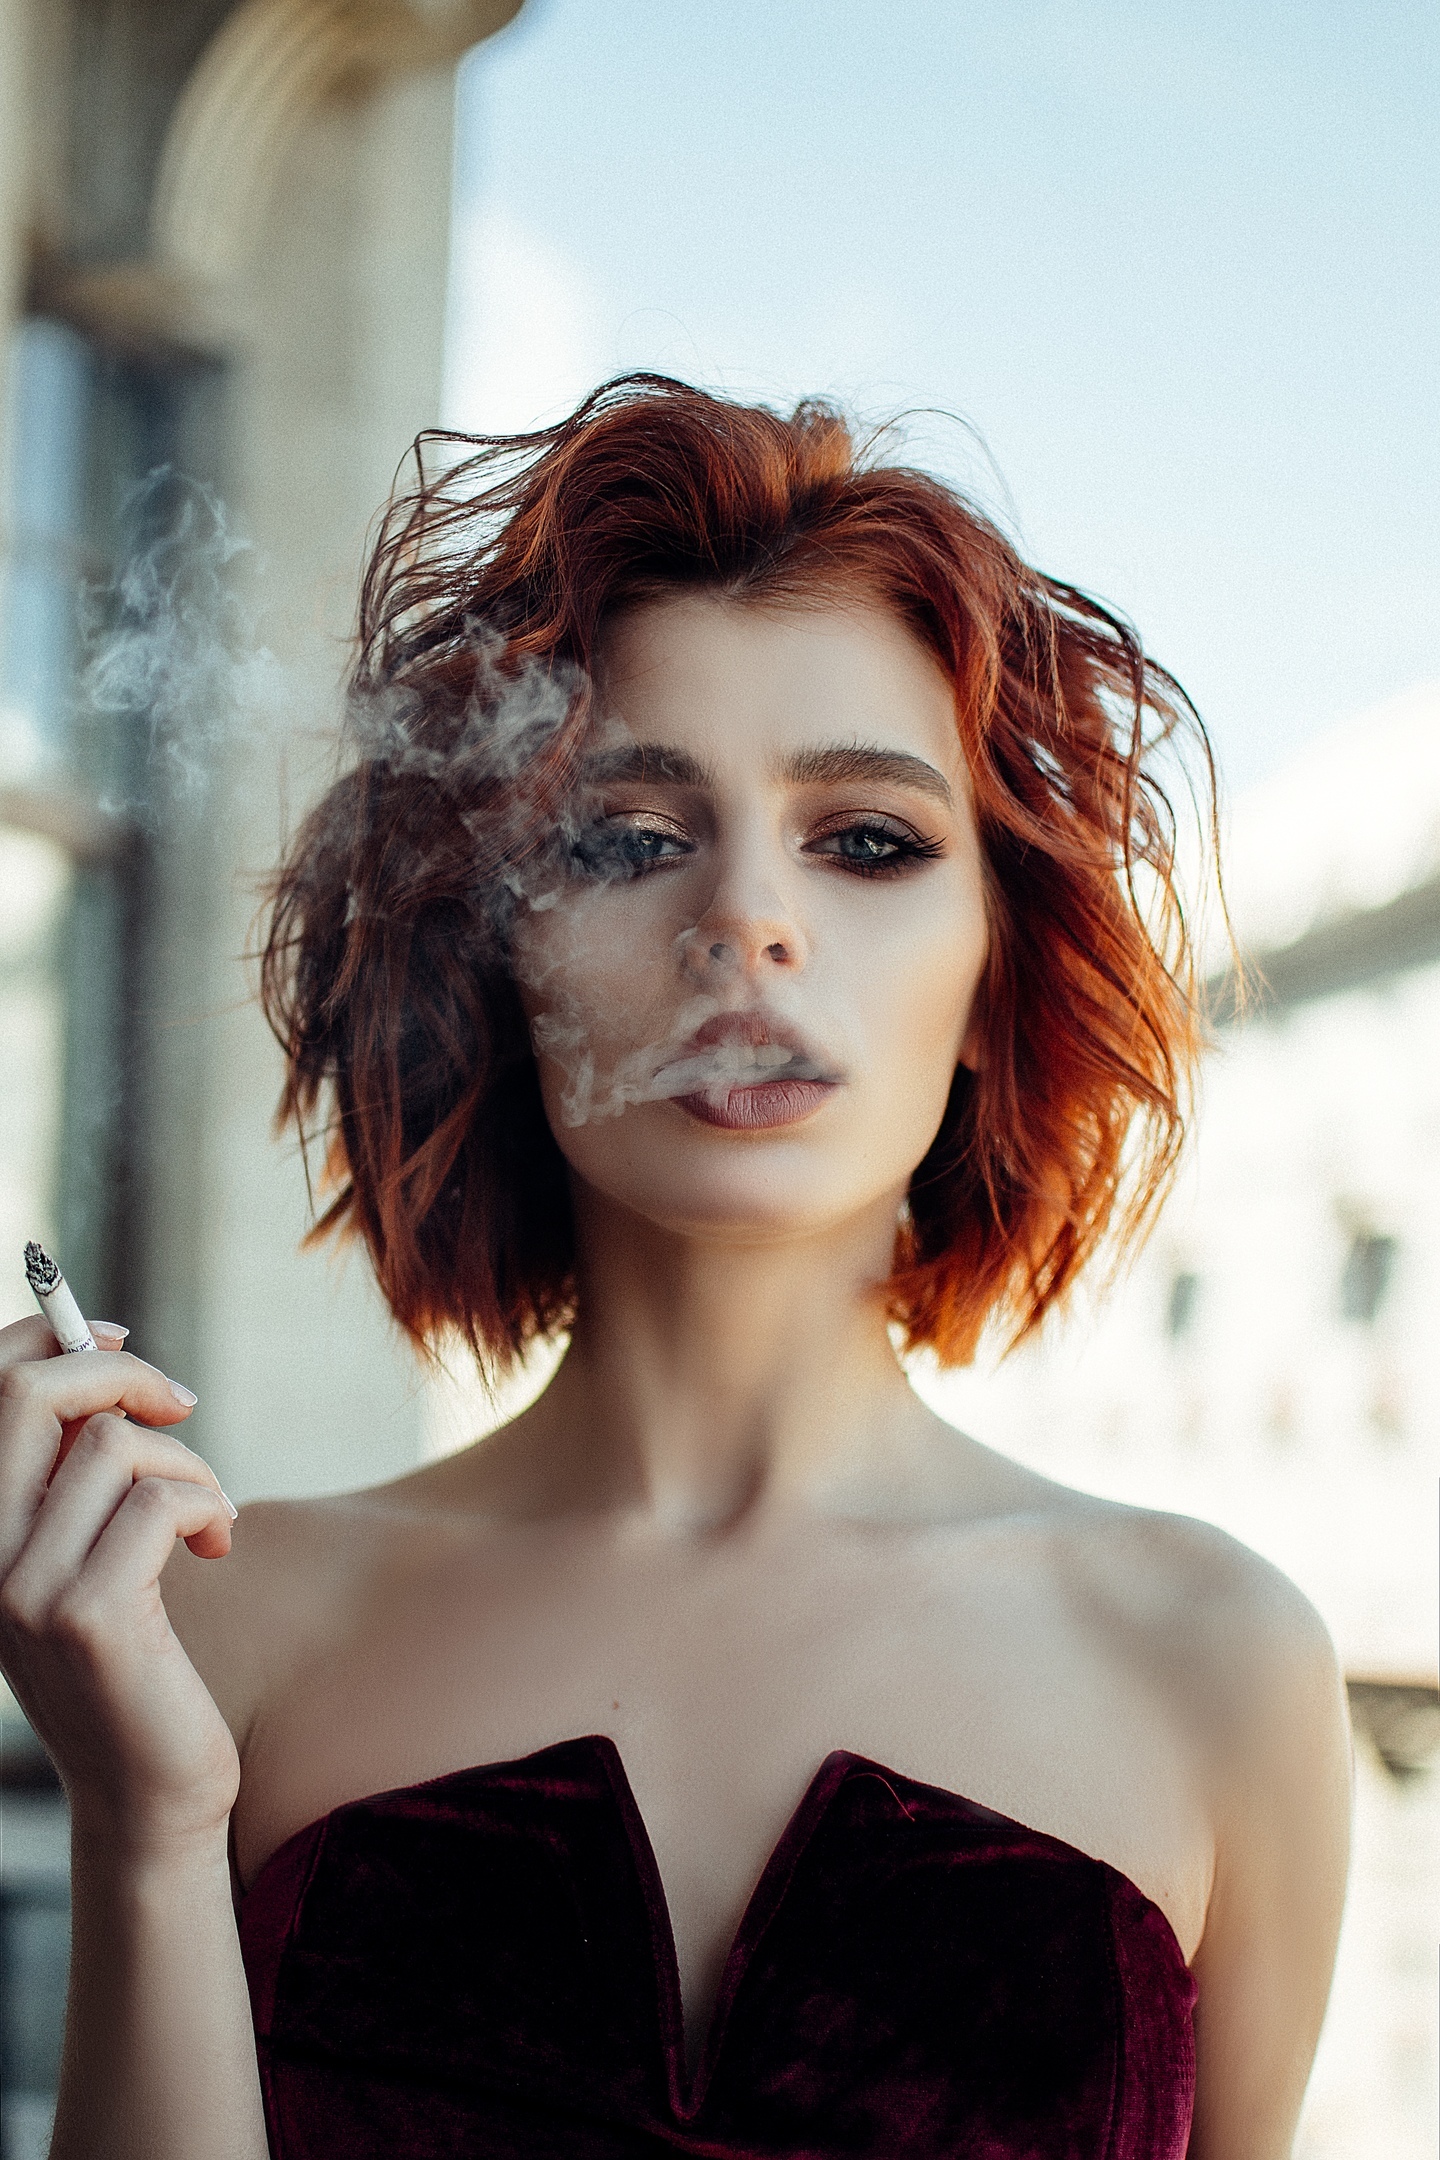 Women Model Short Hair Redhead Dyed Hair Looking At Viewer Vertical Natural Light Smoking Smoke Skin 1440x2160